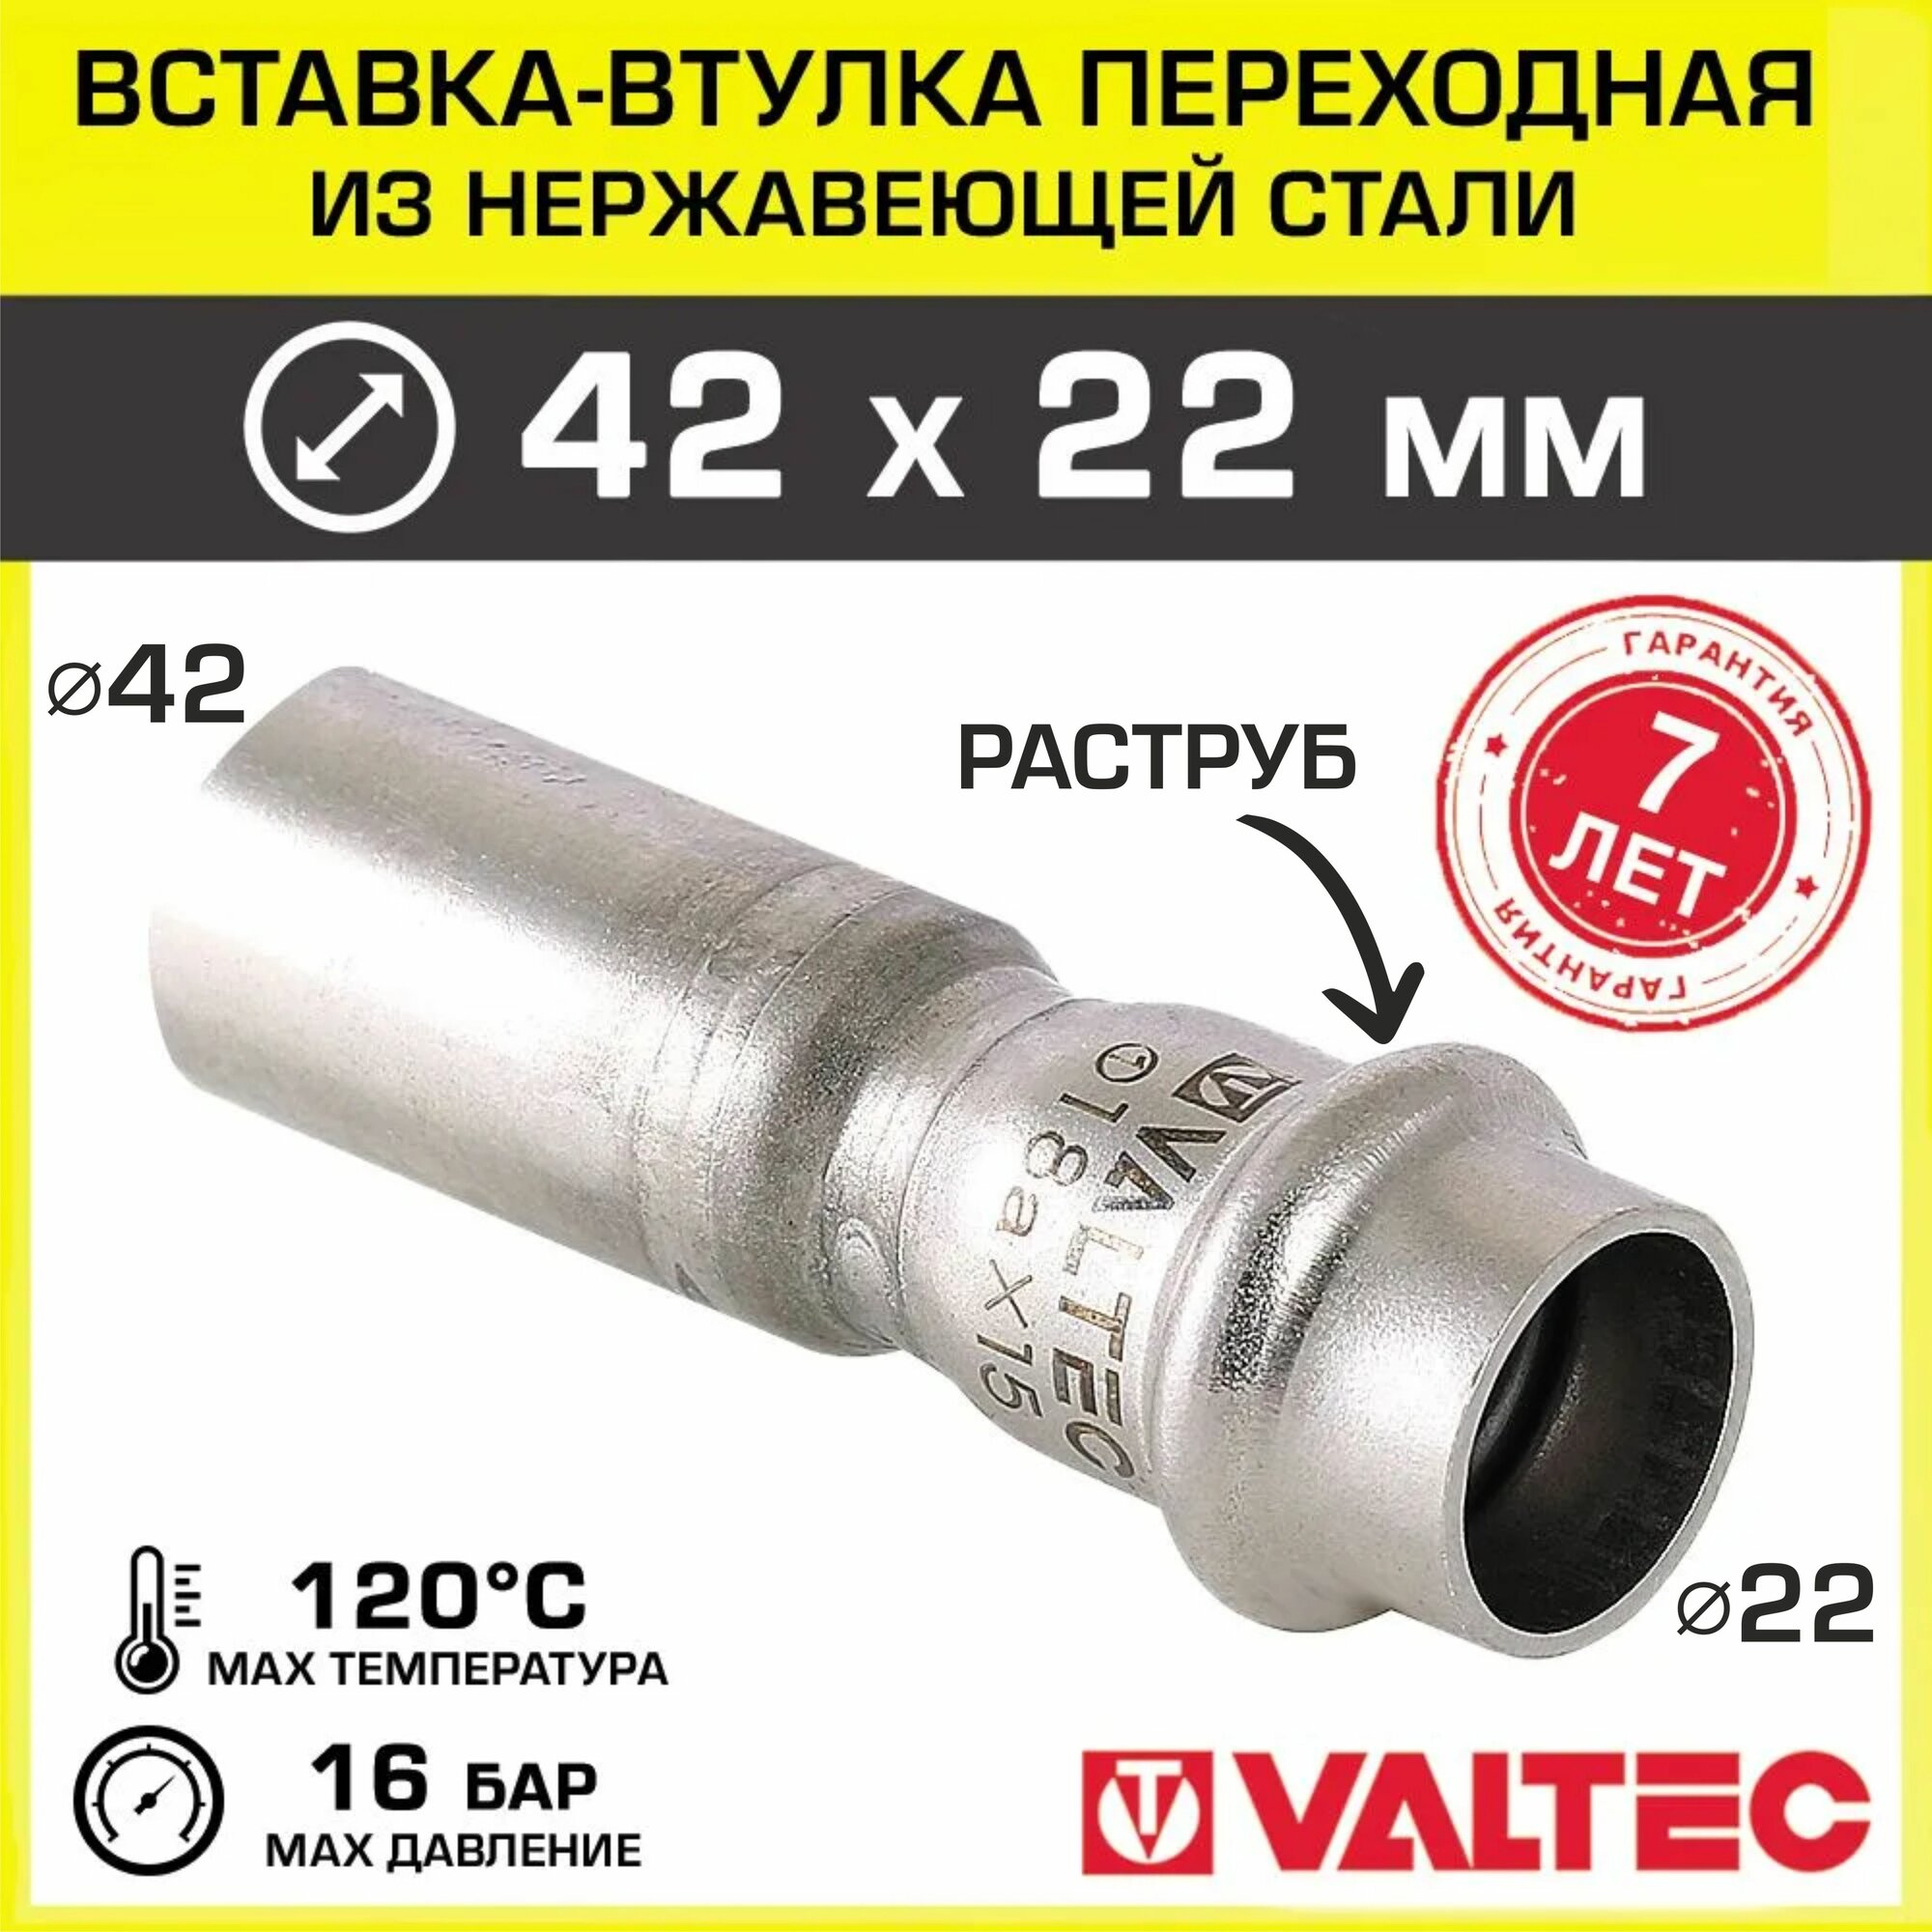 Вставка-втулка переходная 42 х 22 мм VALTEC из нержавейки VTi.905. I.004222